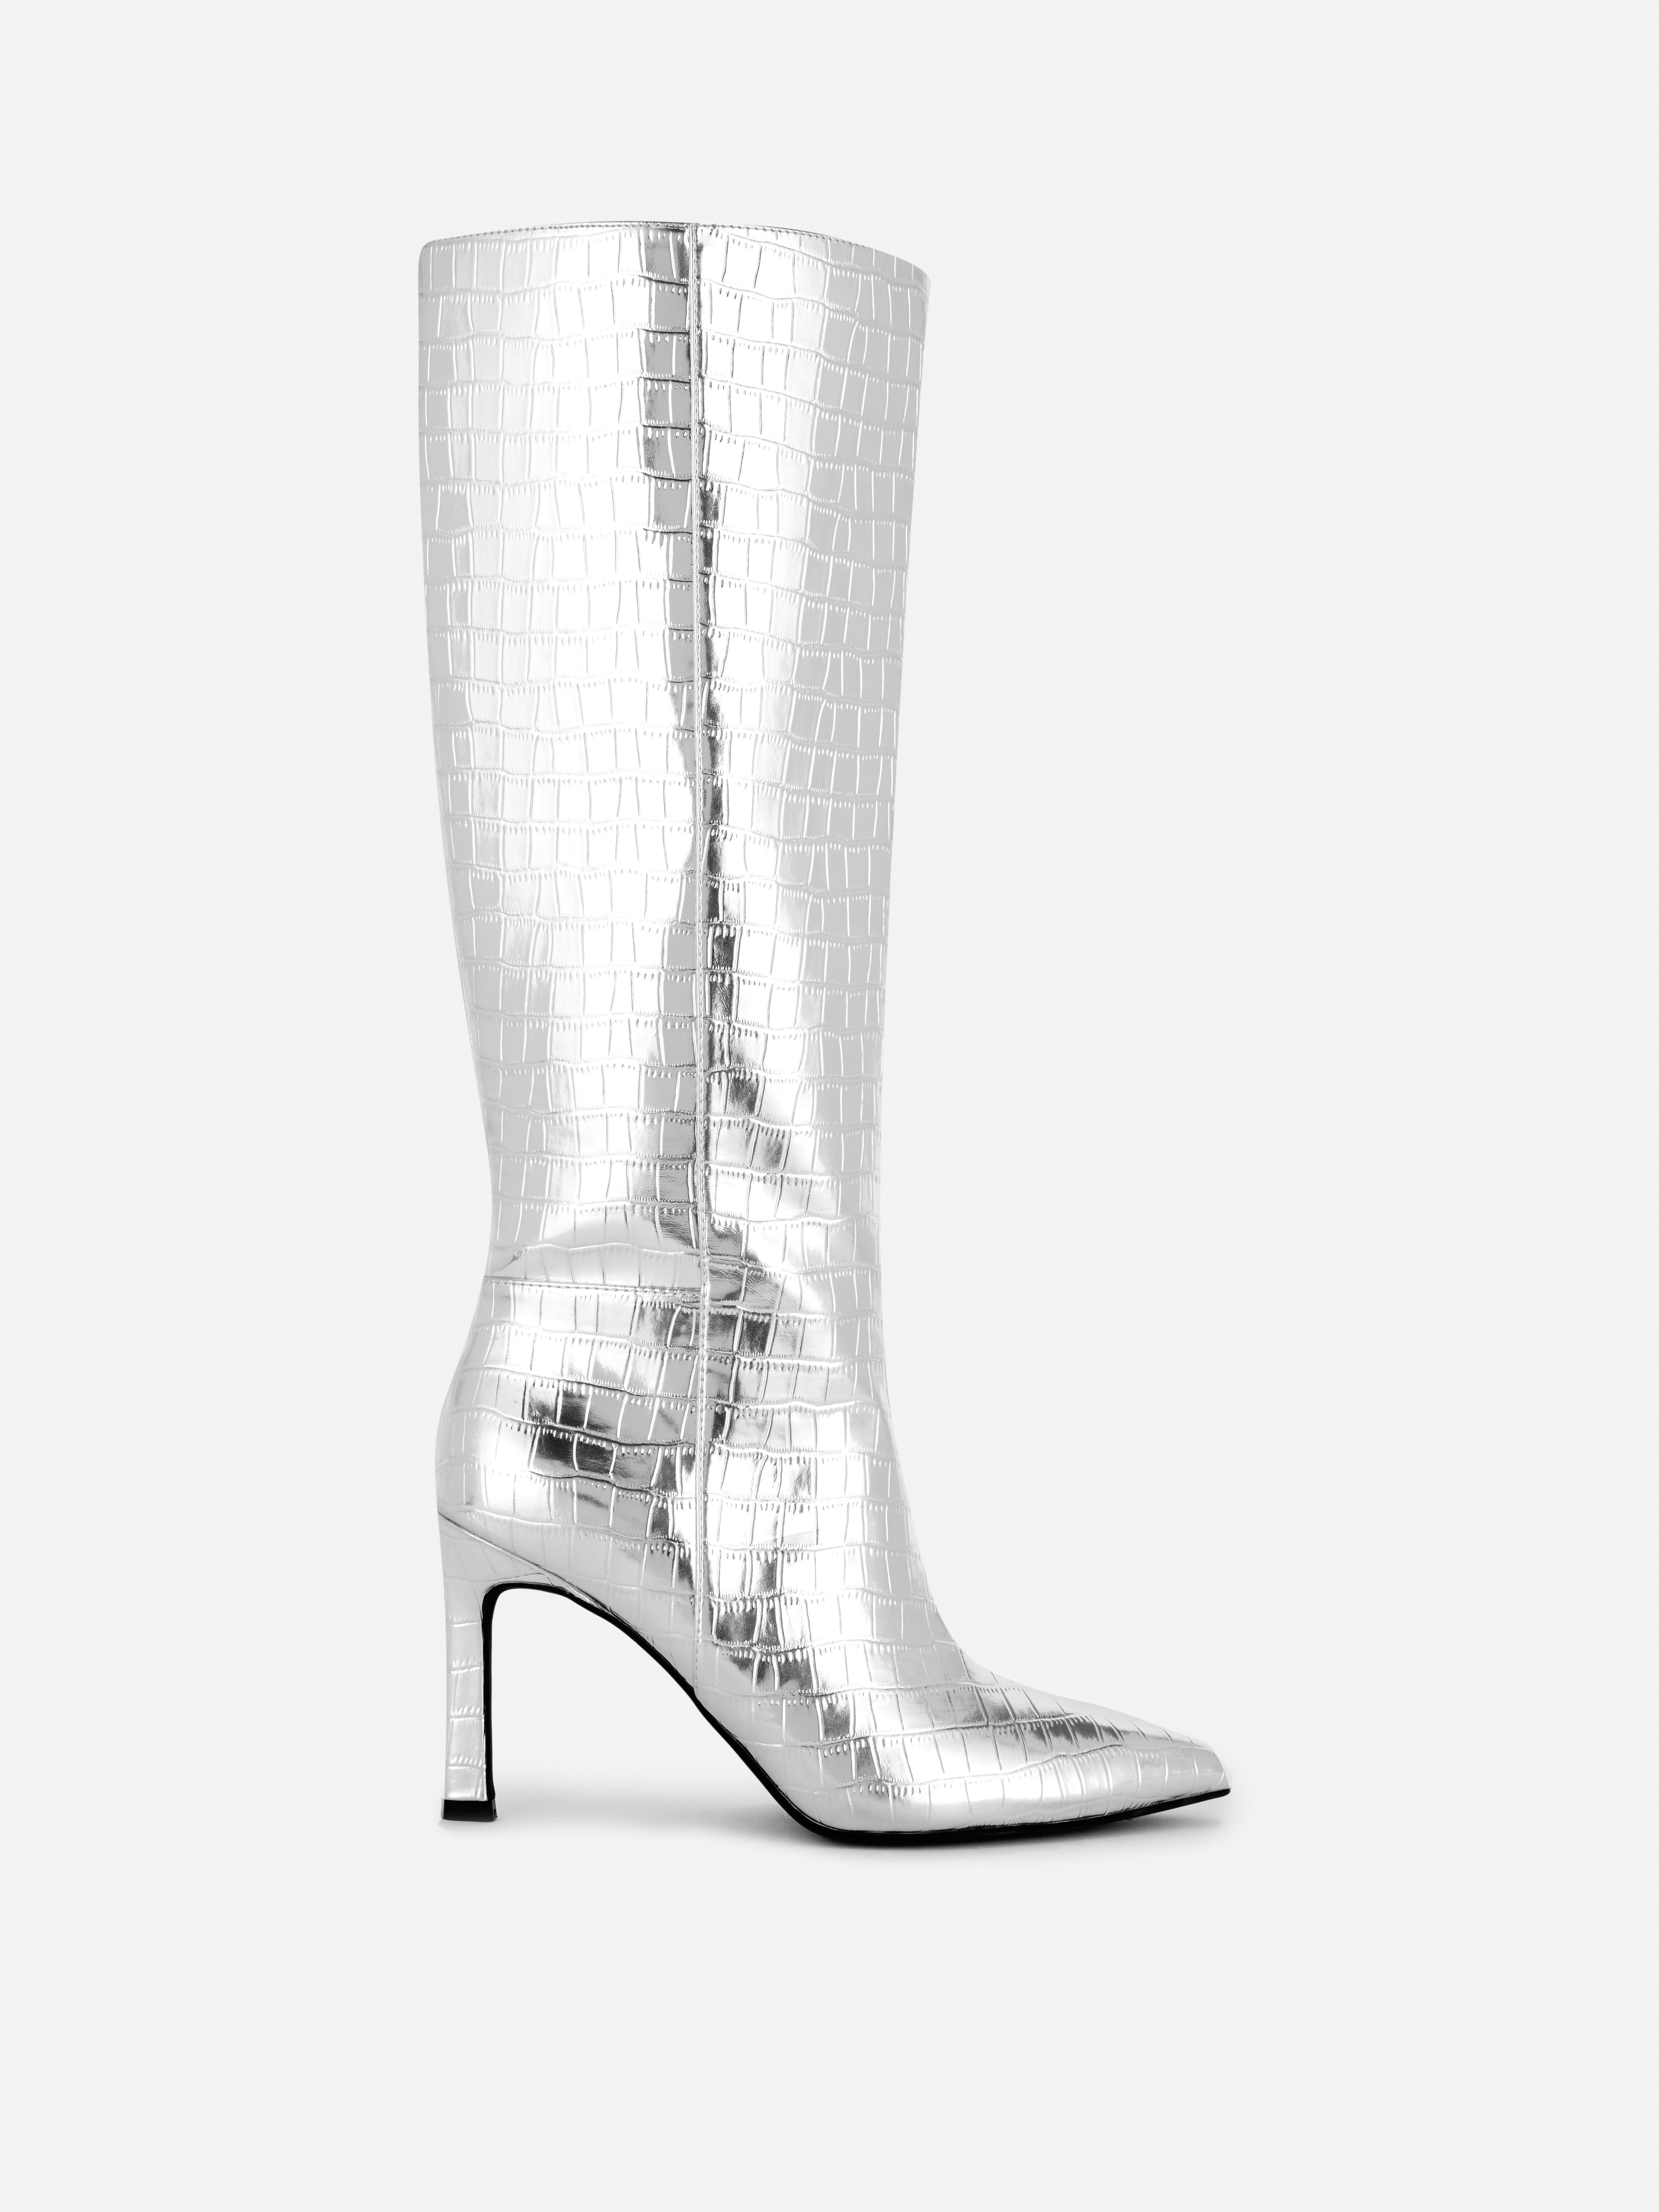 Kniehohe „Rita Ora“ Stiefel aus Krokodilkunstleder